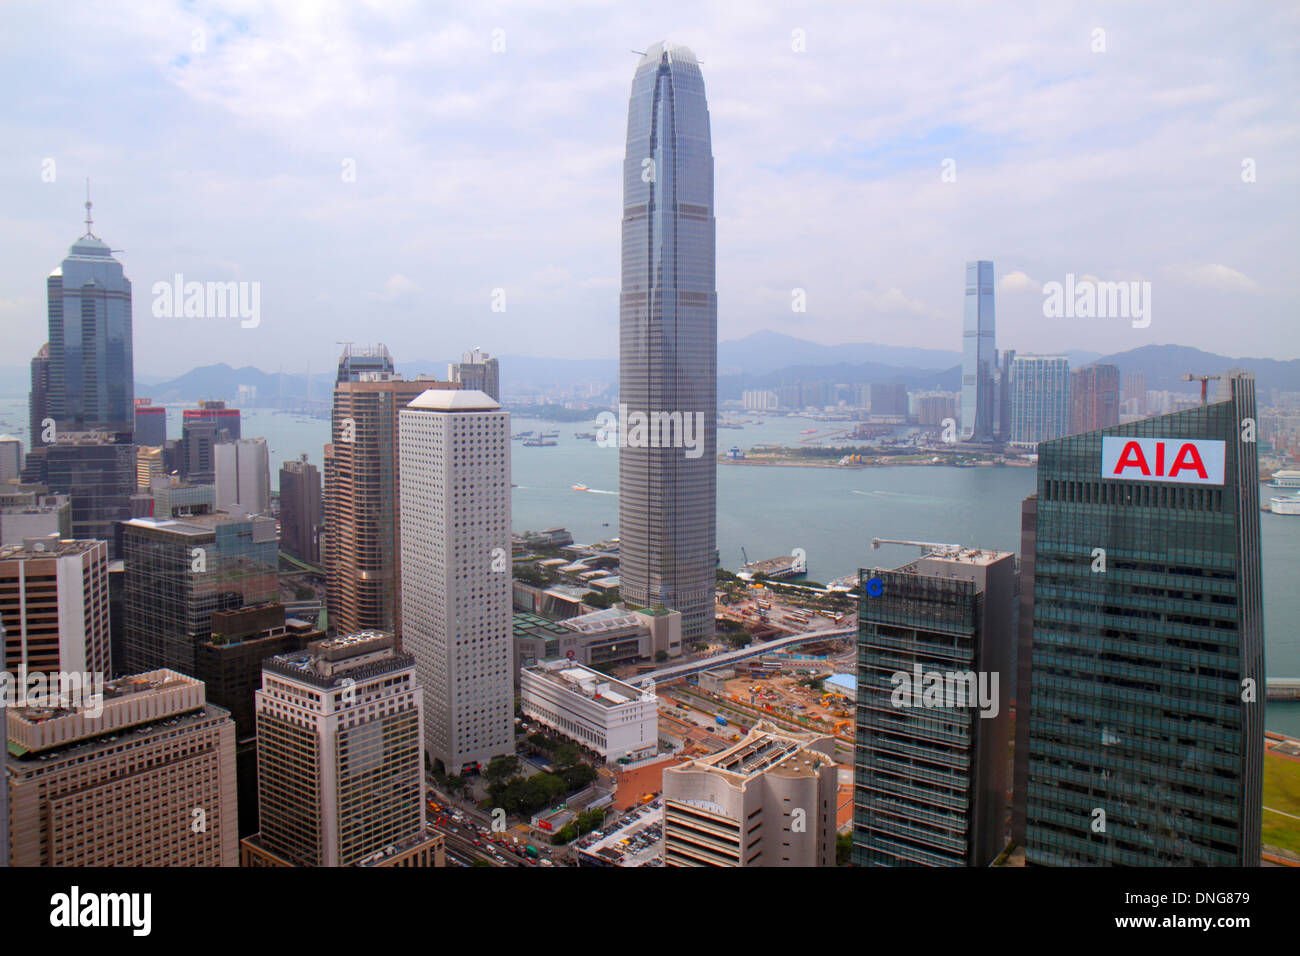 Hong Kong China, HK, Asien, Chinesisch, Orientalisch, Insel, Zentral, zwei internationale Finanzzentren, Hochhäuser Wolkenkratzer Gebäude Wolkenkratzer Stockfoto